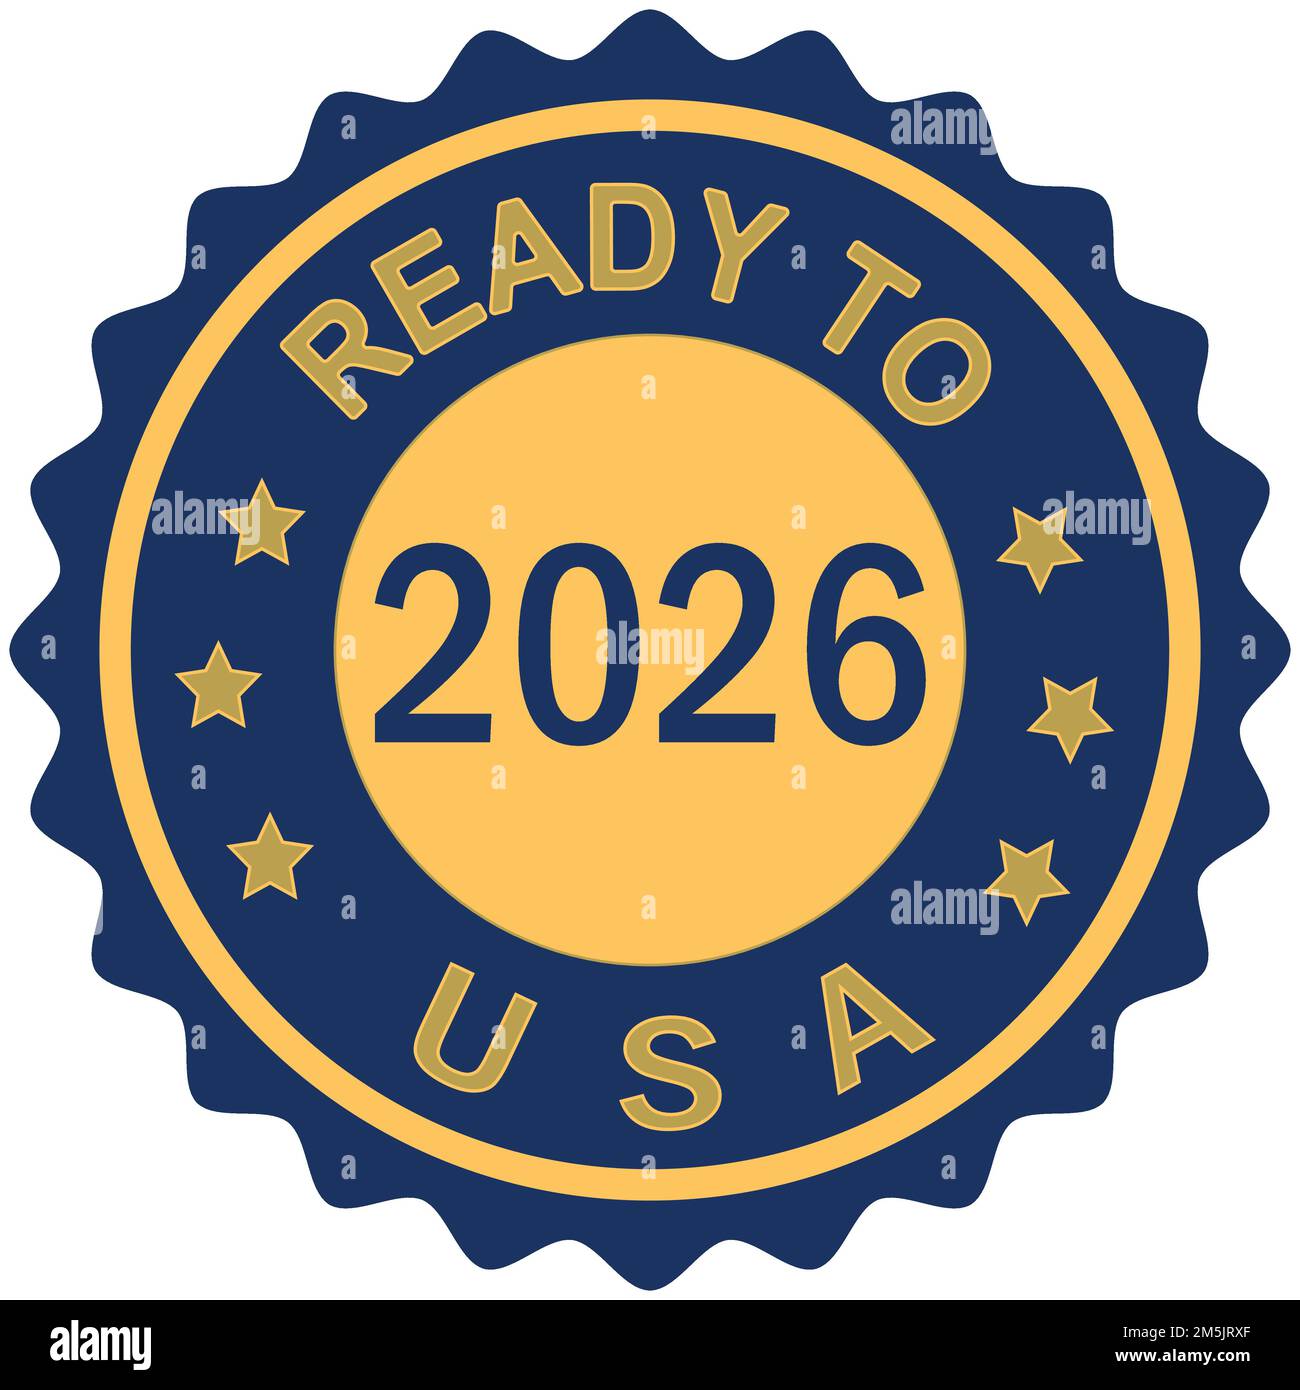 2026 Visit to USA farbenfrohes, abgestuftes Pinseldesign Vektordarstellung USA-Flagge Blaue Farben Hintergrund bereit Stempel FIFA Fußball-Weltmeisterschaft USA Goldsiegel Stock Vektor